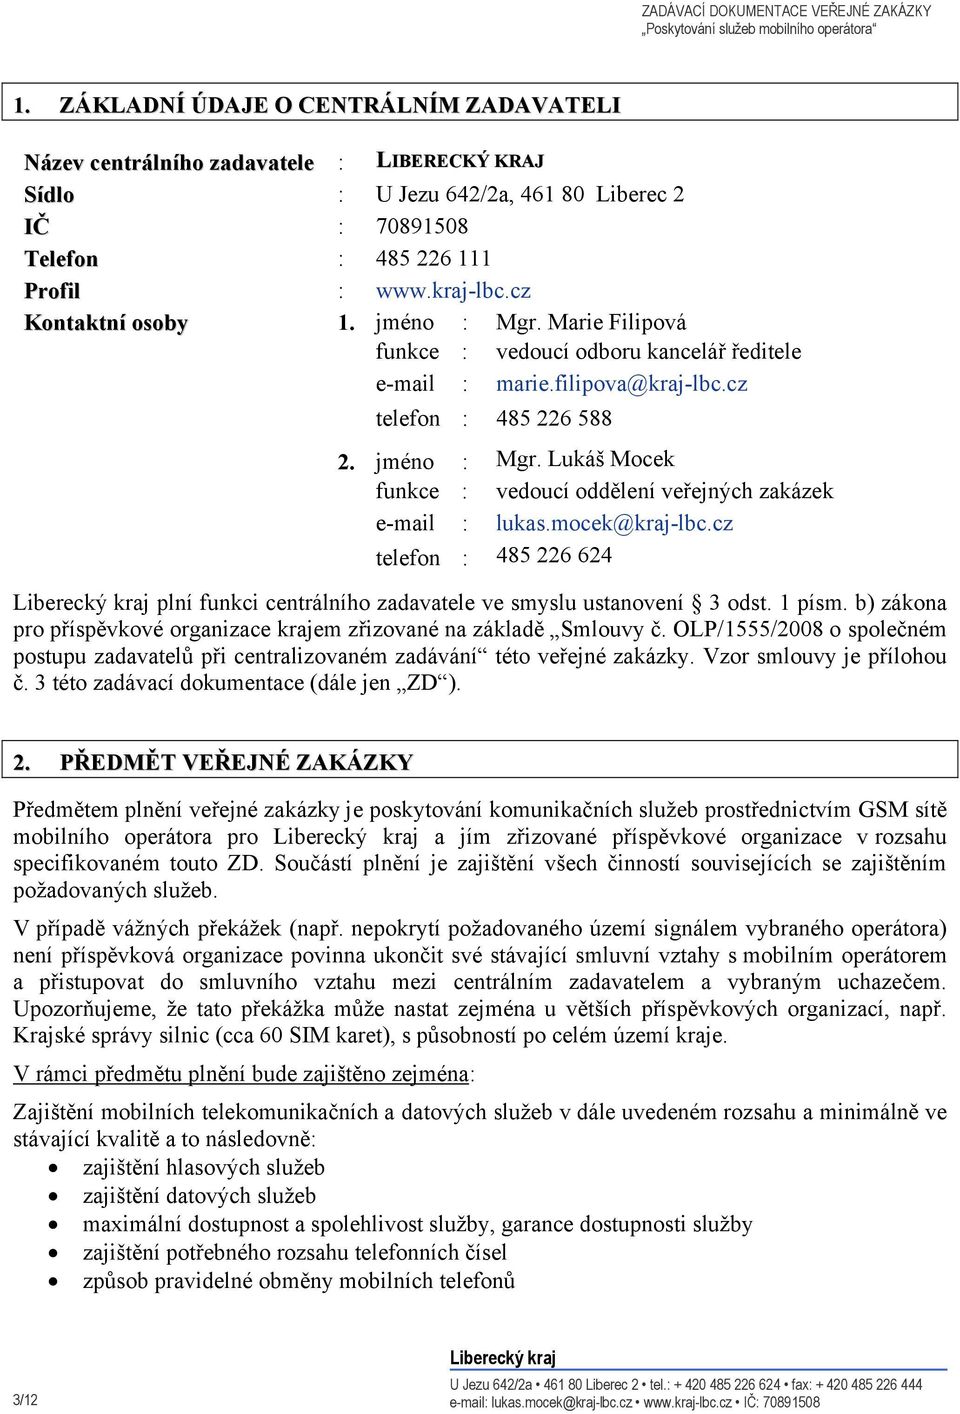 mocek@kraj-lbc.cz telefon : 485 226 624 plní funkci centrálního zadavatele ve smyslu ustanovení 3 odst. 1 písm. b) zákona pro příspěvkové organizace krajem zřizované na základě Smlouvy č.